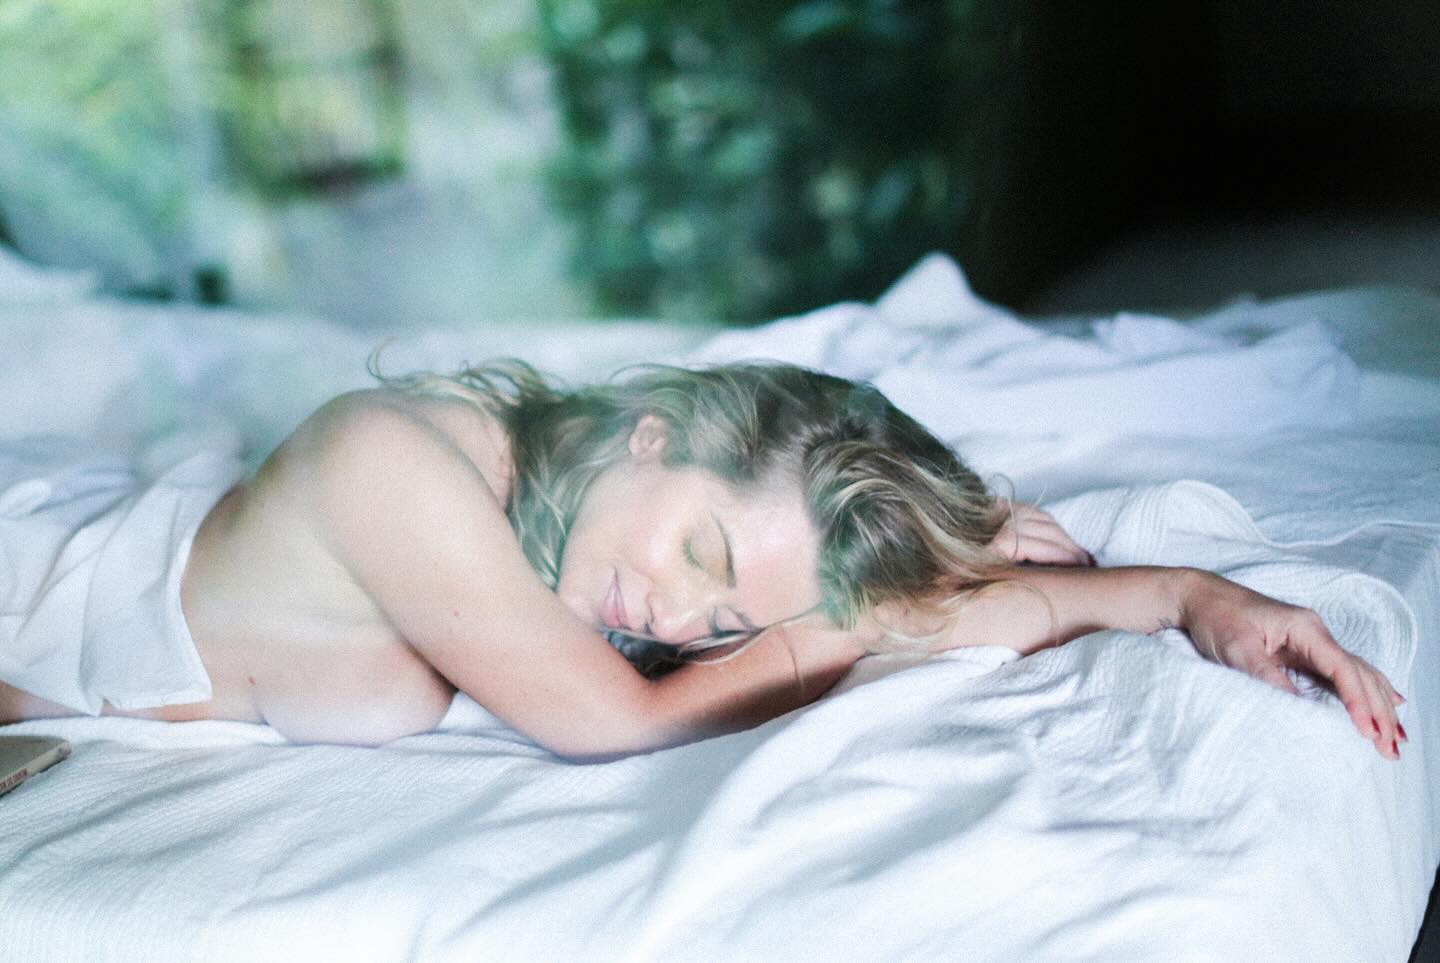 Leticia Spiller posou de topless na cama em “dia de preguiça” - Foto: Reprodução/ Instagram@maripatriotainsta